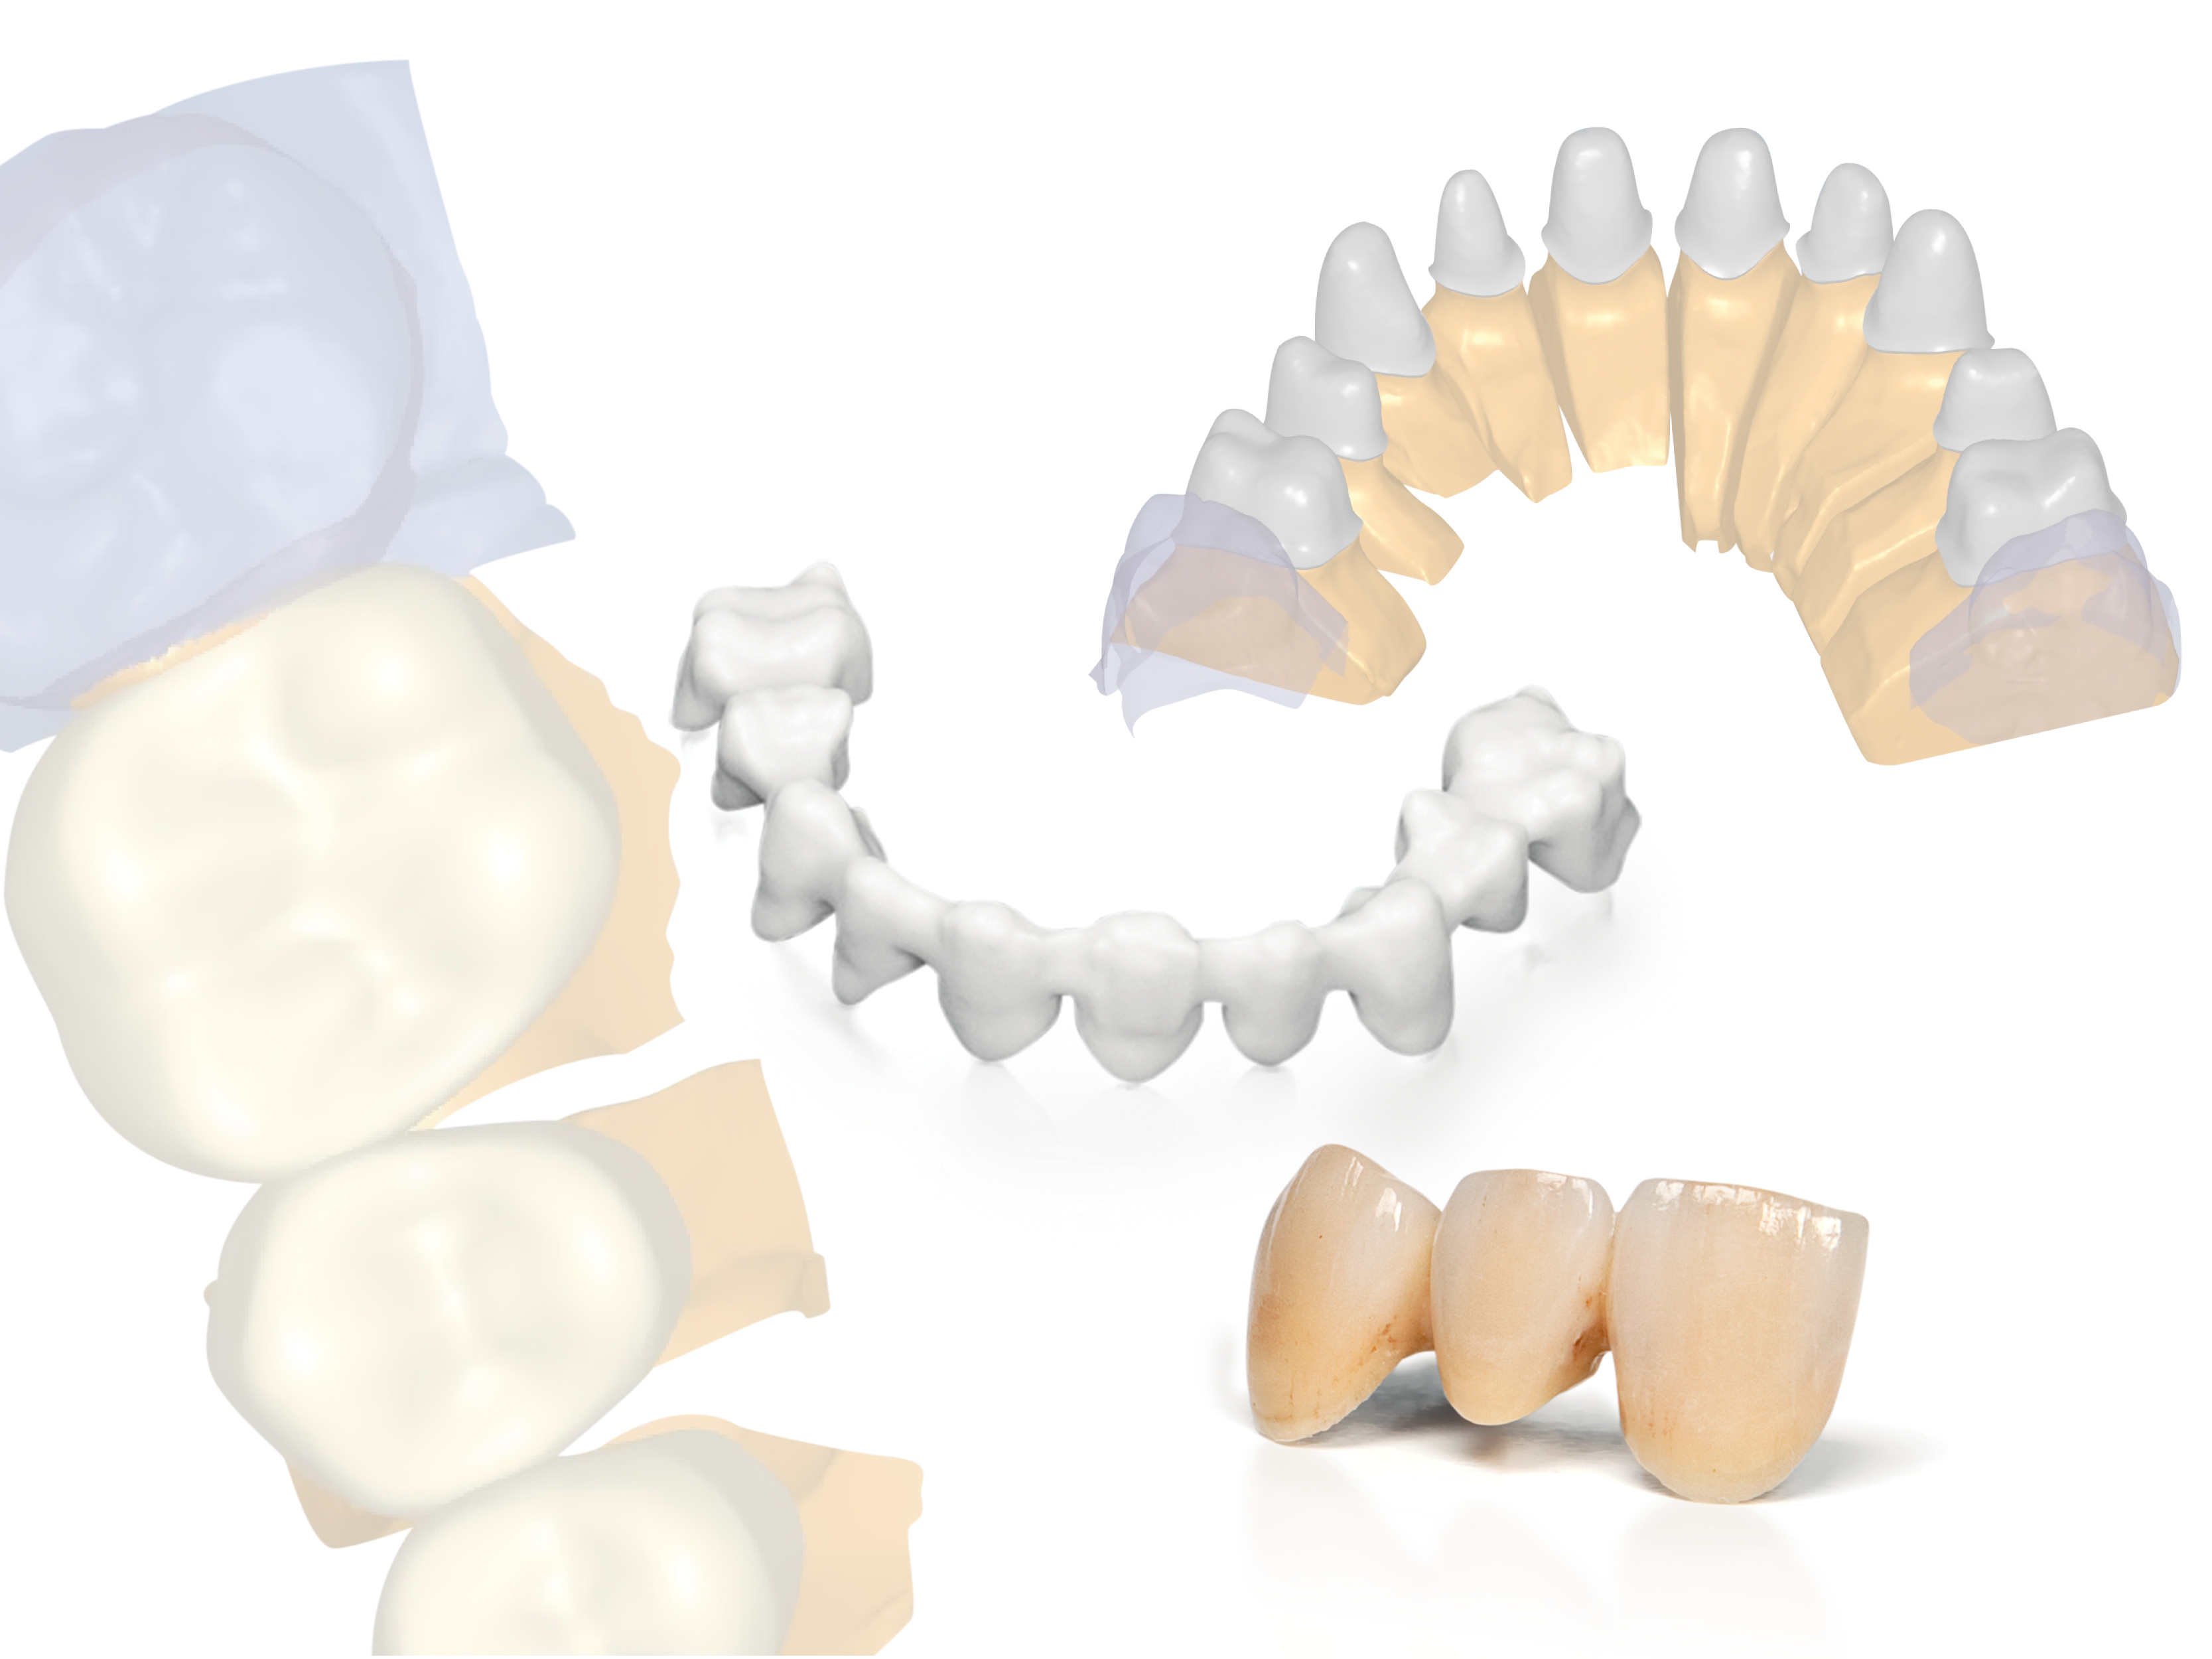 Nuove soluzioni CAD/CAM aperte di Planmeca per i dentisti e i laboratori odontotecnici